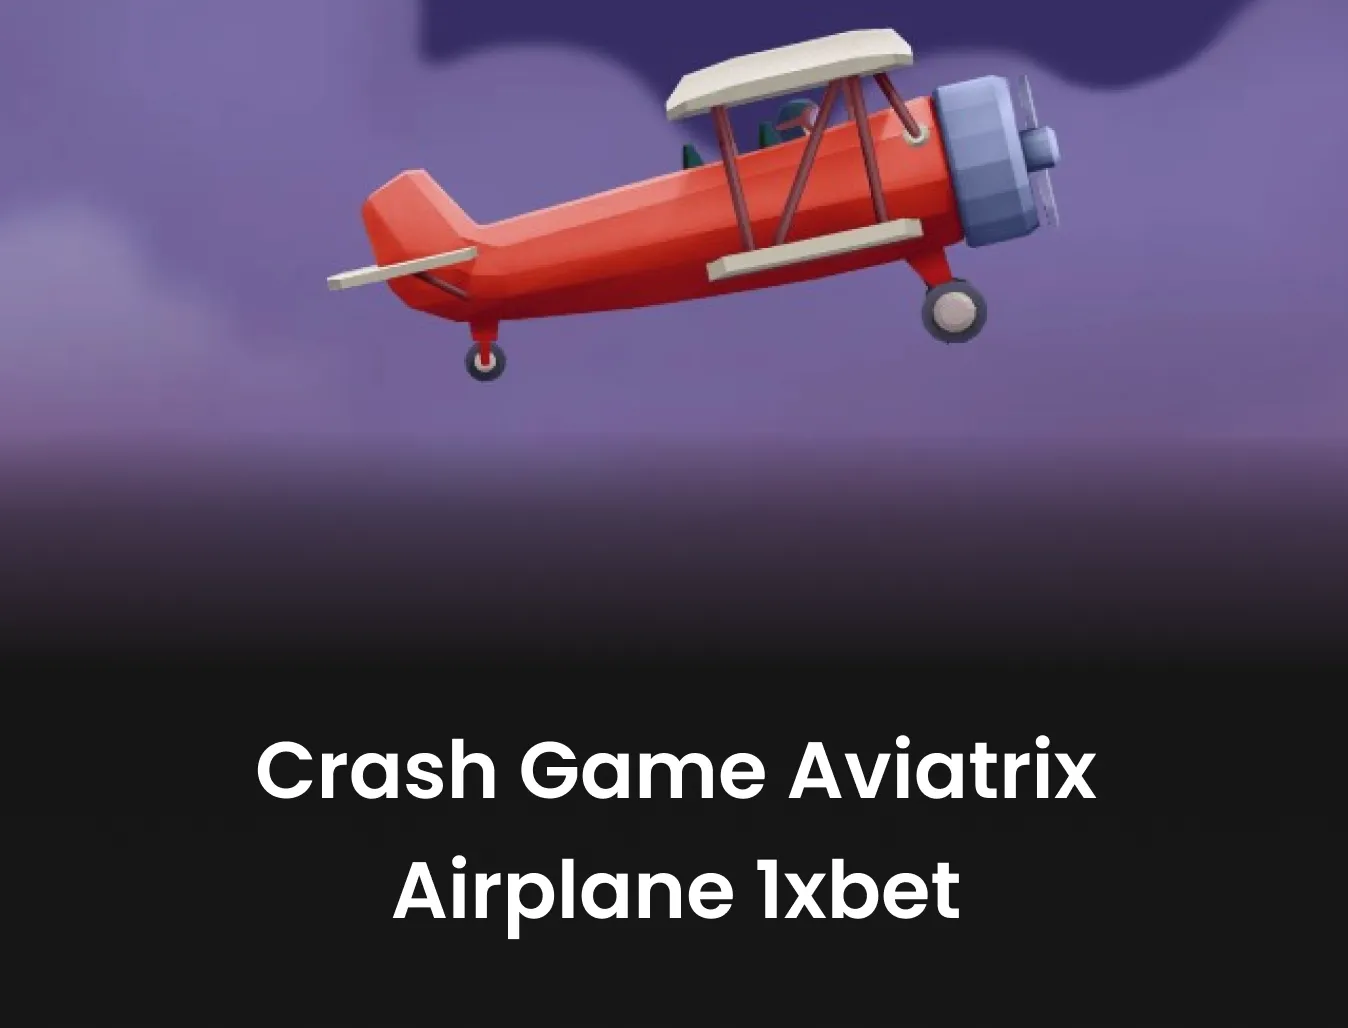 aviatrix 1xbet crash game